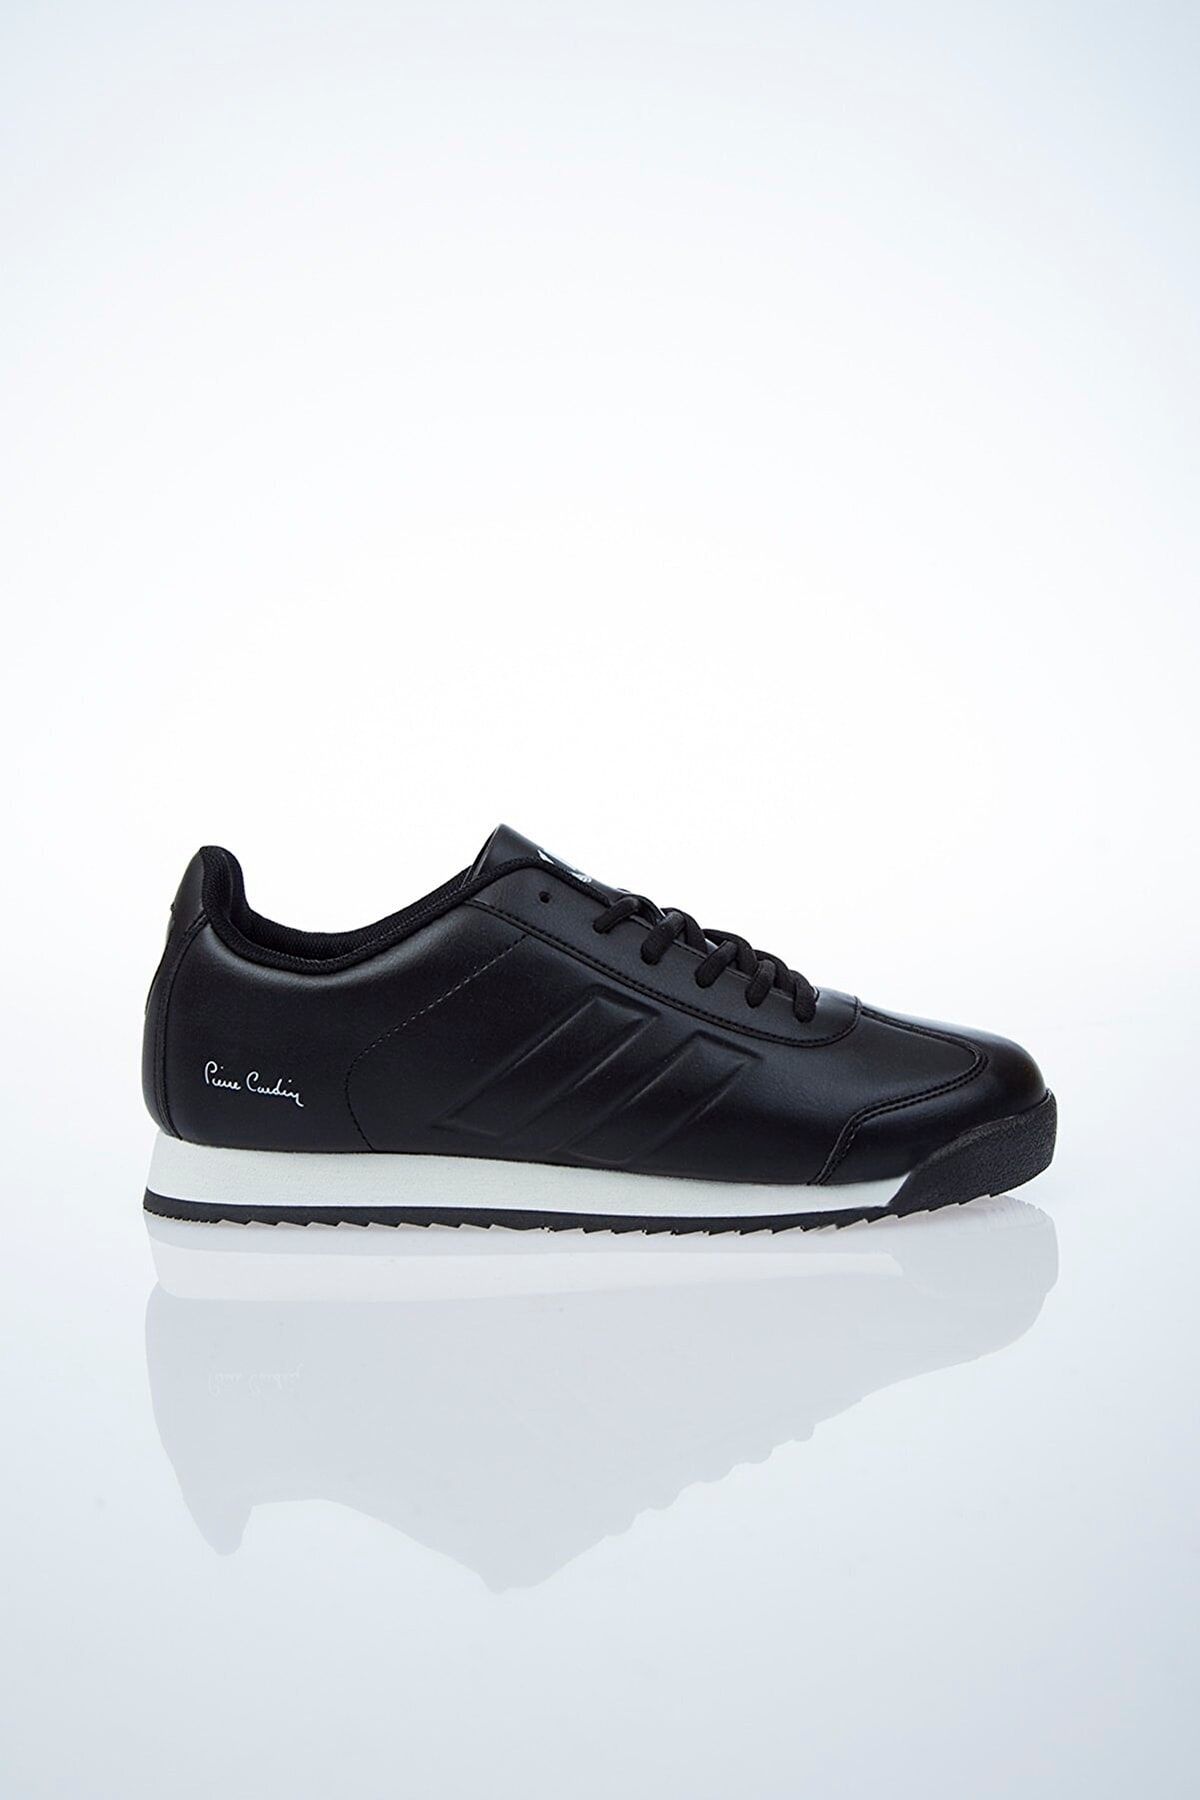 Pierre Cardin Pc-30484-88 Siyah-beyaz Unisex Spor Ayakkabı